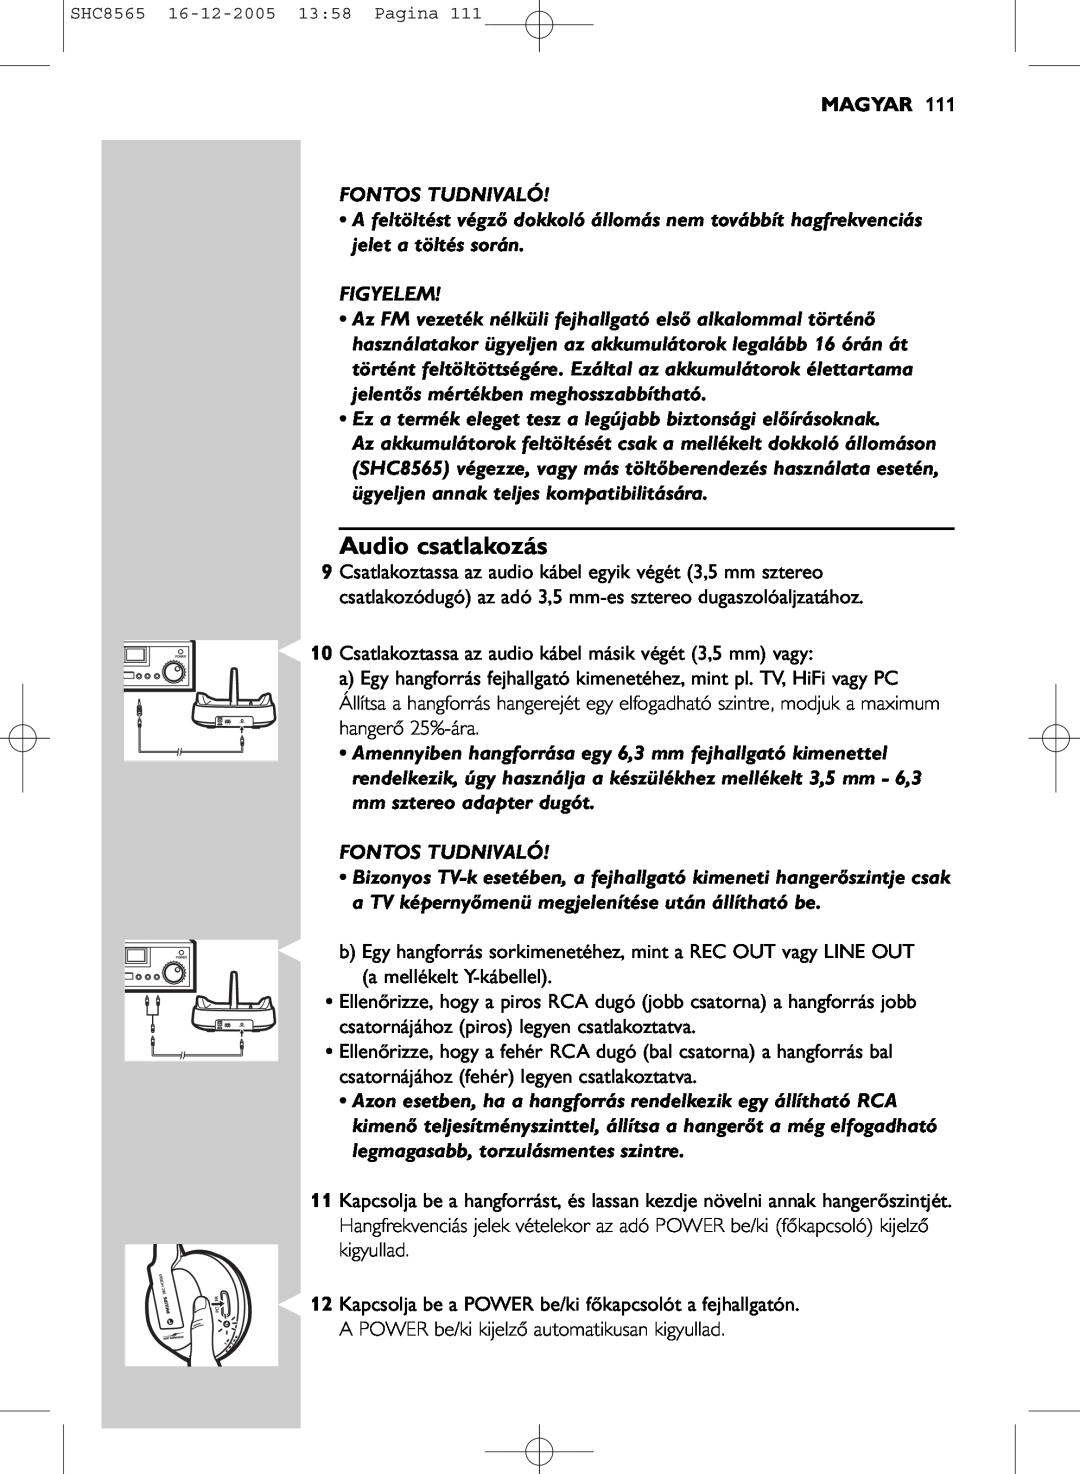 Philips SHC8565 manual Audio csatlakozás, Magyar, Fontos Tudnivaló, Figyelem 